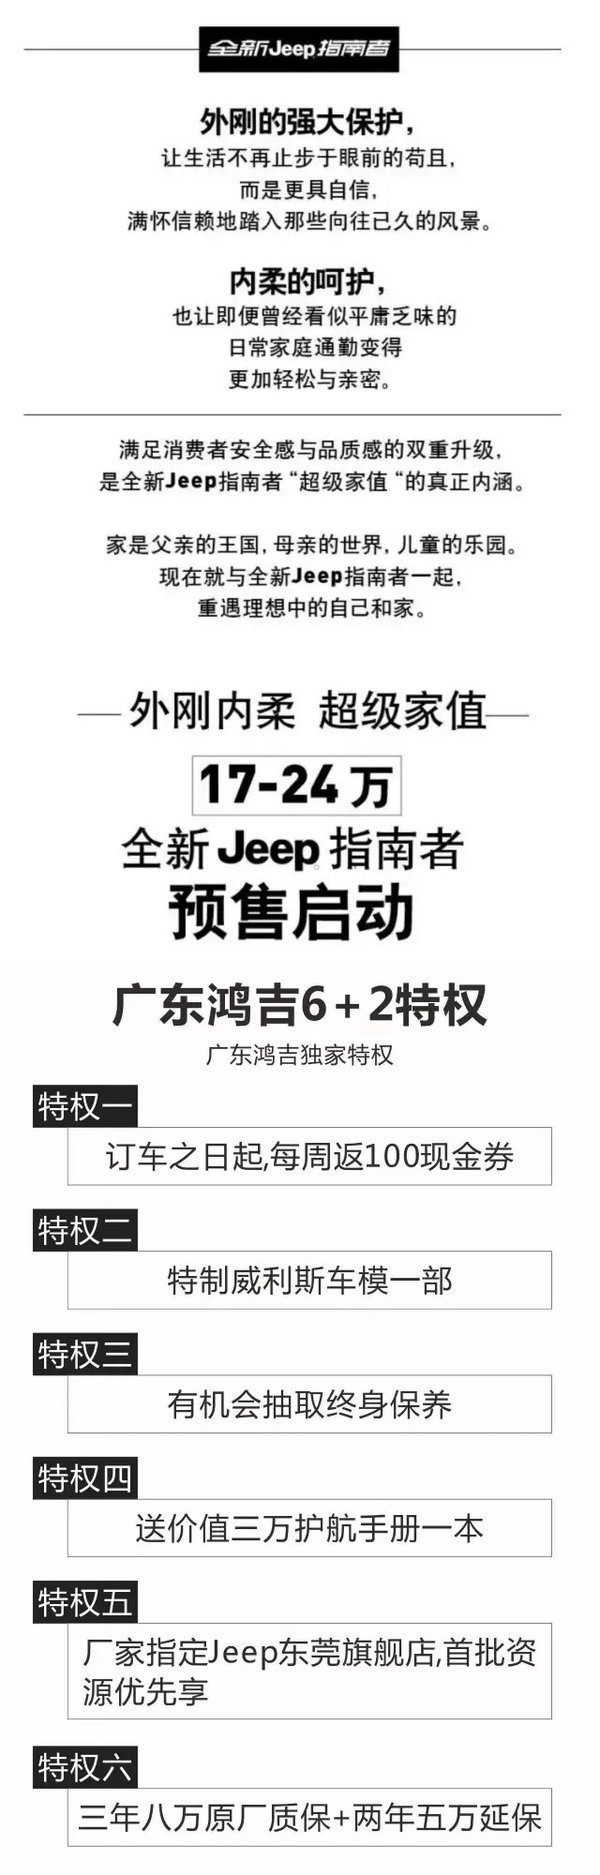 Jeep东莞旗舰店——广东鸿吉周年庆典-图11